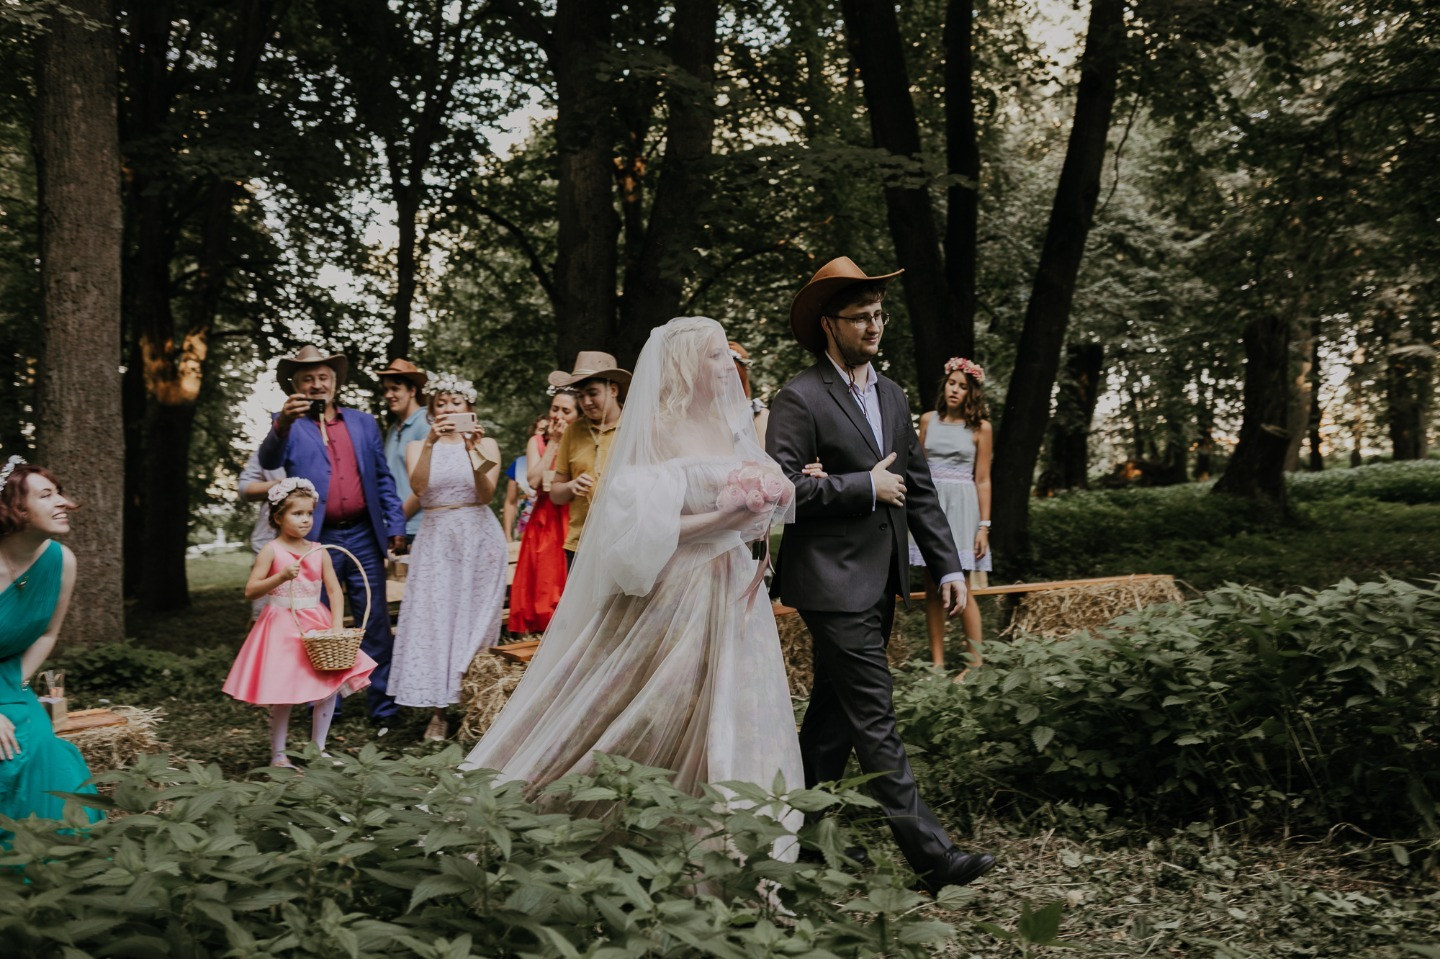 7 years to infinity: свадьба в загородном доме